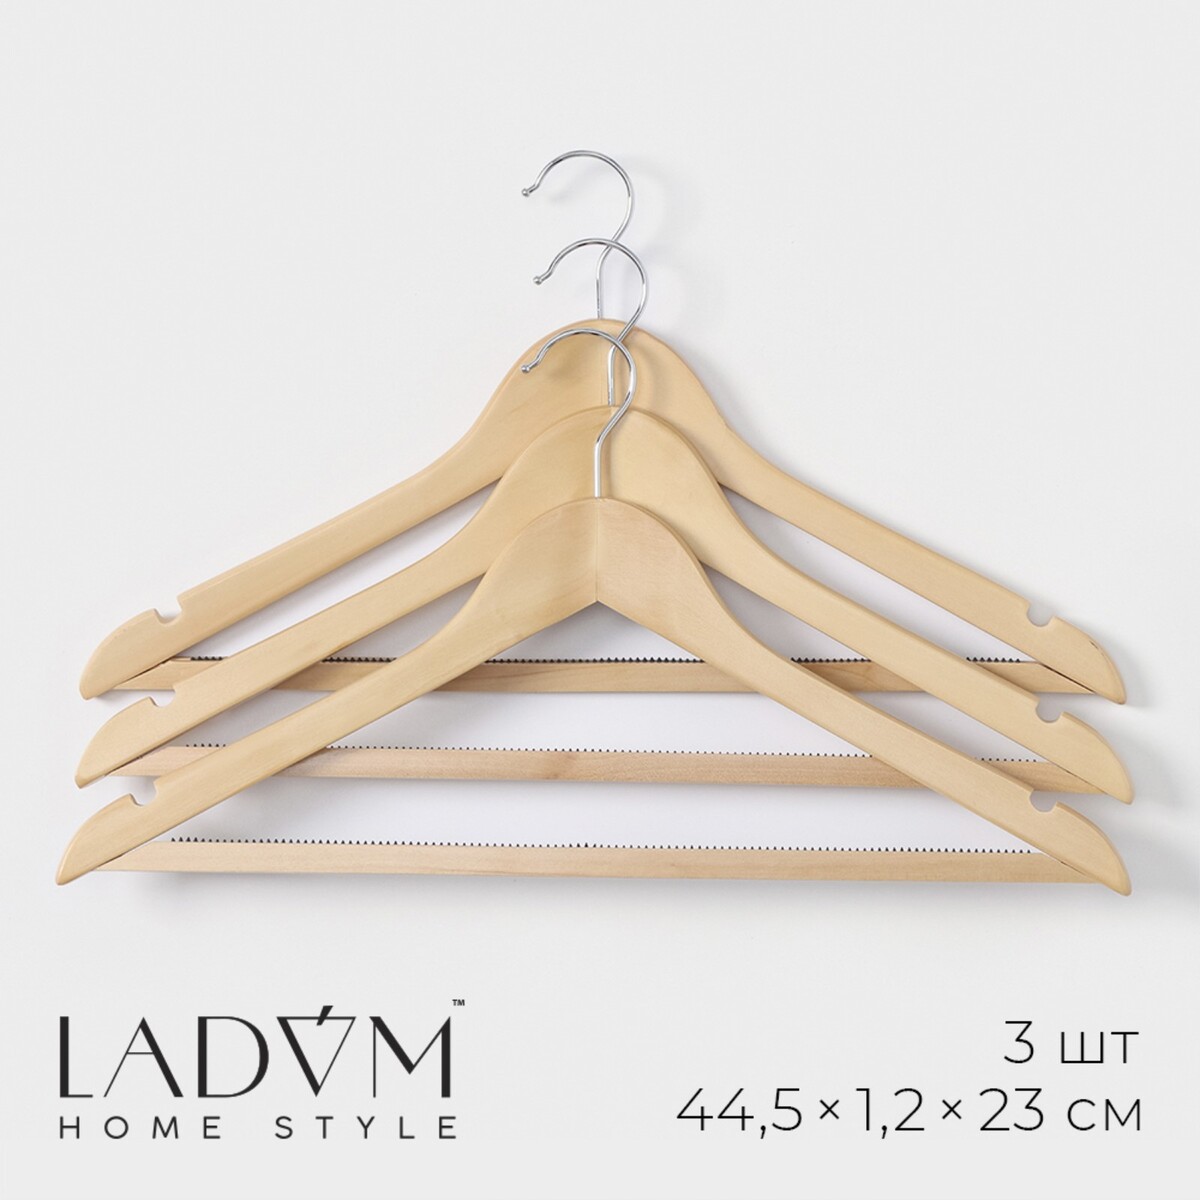 Плечики - вешалки для одежды деревянные с антискользящей перекладиной ladо́m bois, 44×1,2×23 см, 3 шт, сорт а, цвет светлое дерево плечики вешалки для одежды ladо́m